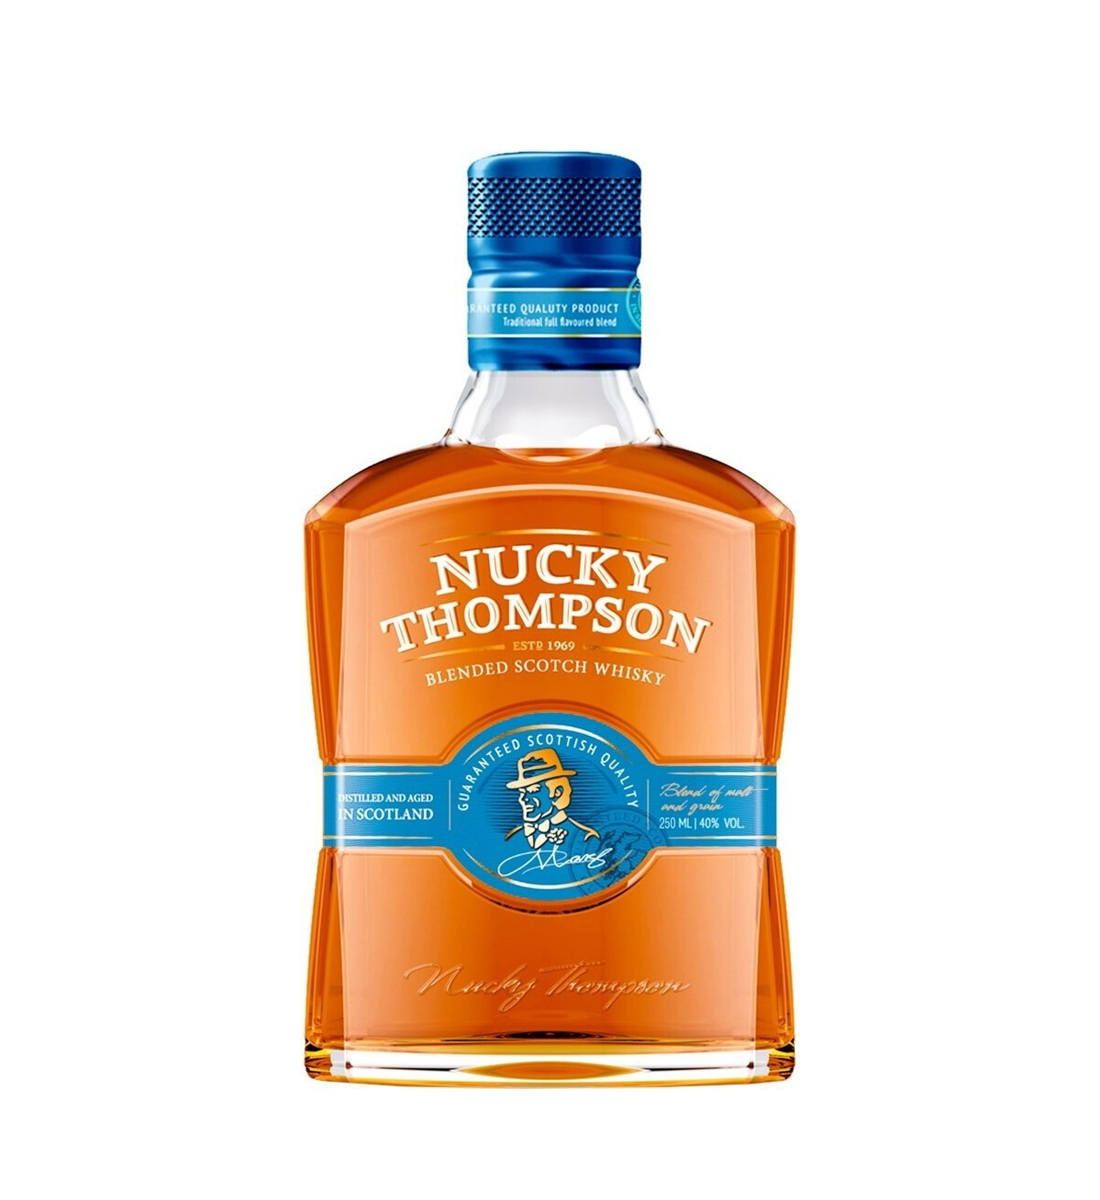 Nucky Thompson Blended Scotch Whisky 0.7L